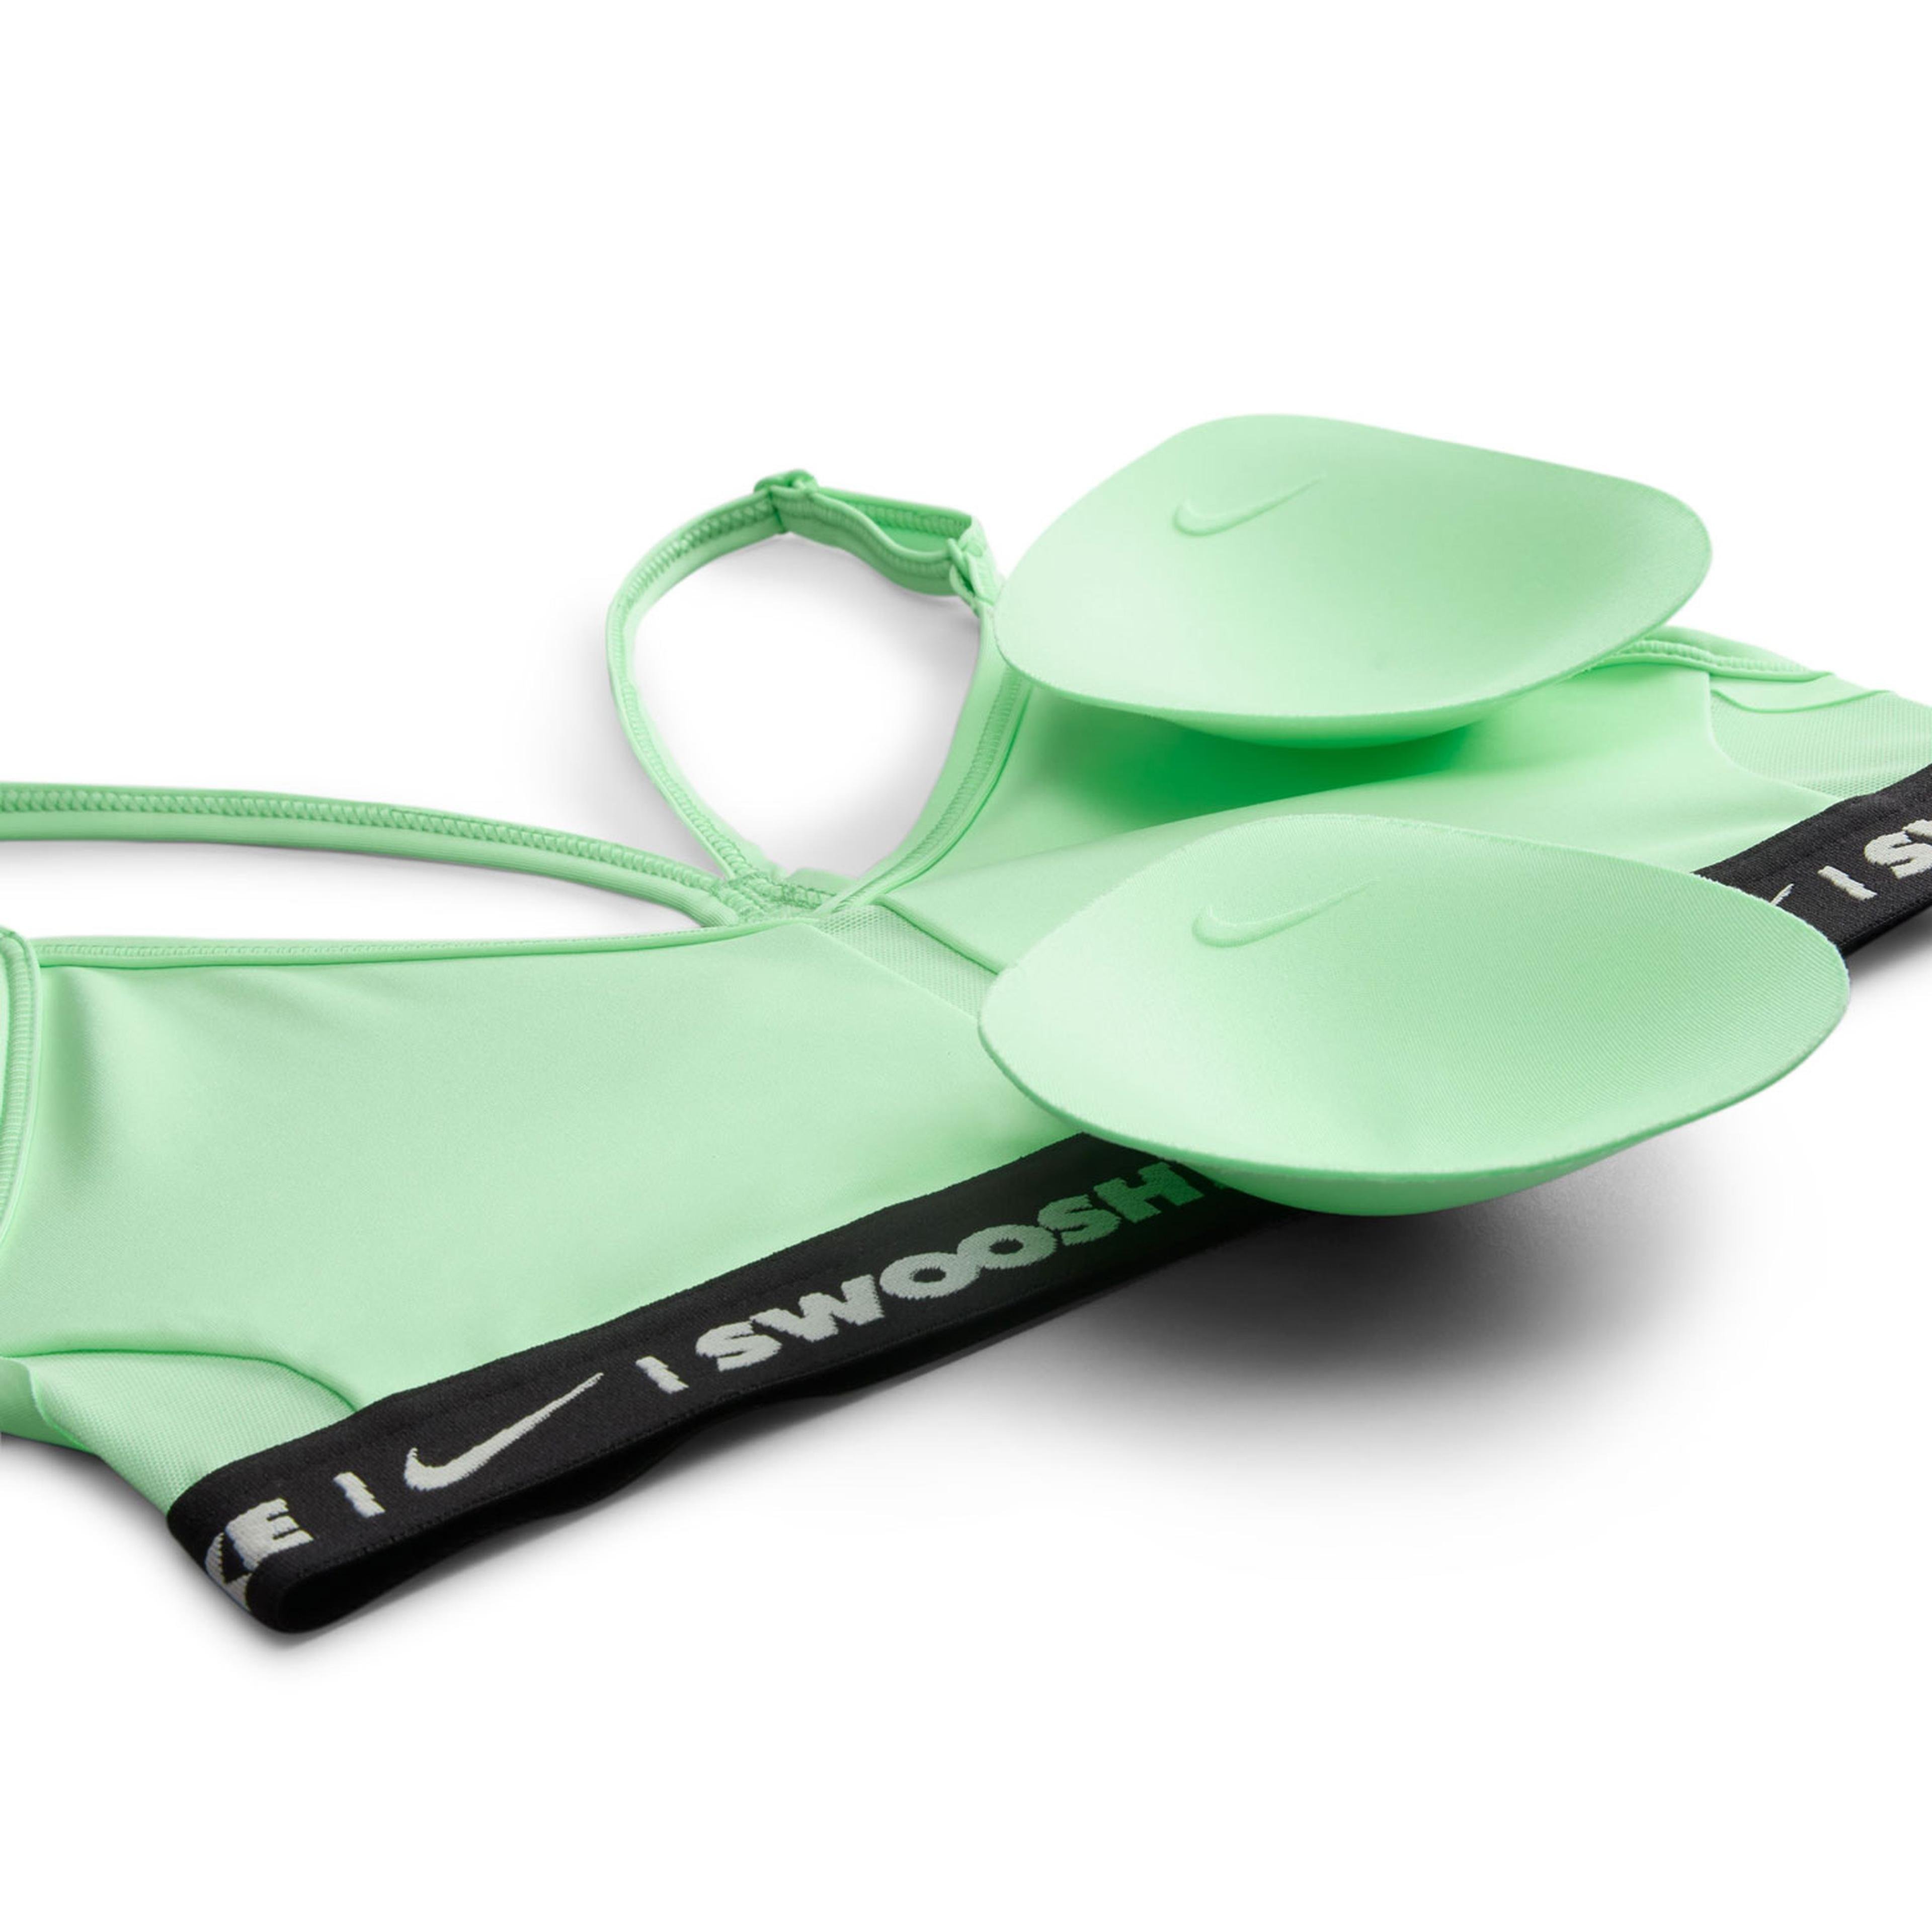 Nike Indy Light-Support Padded V-Neck Sports Kadın Yeşil Bra